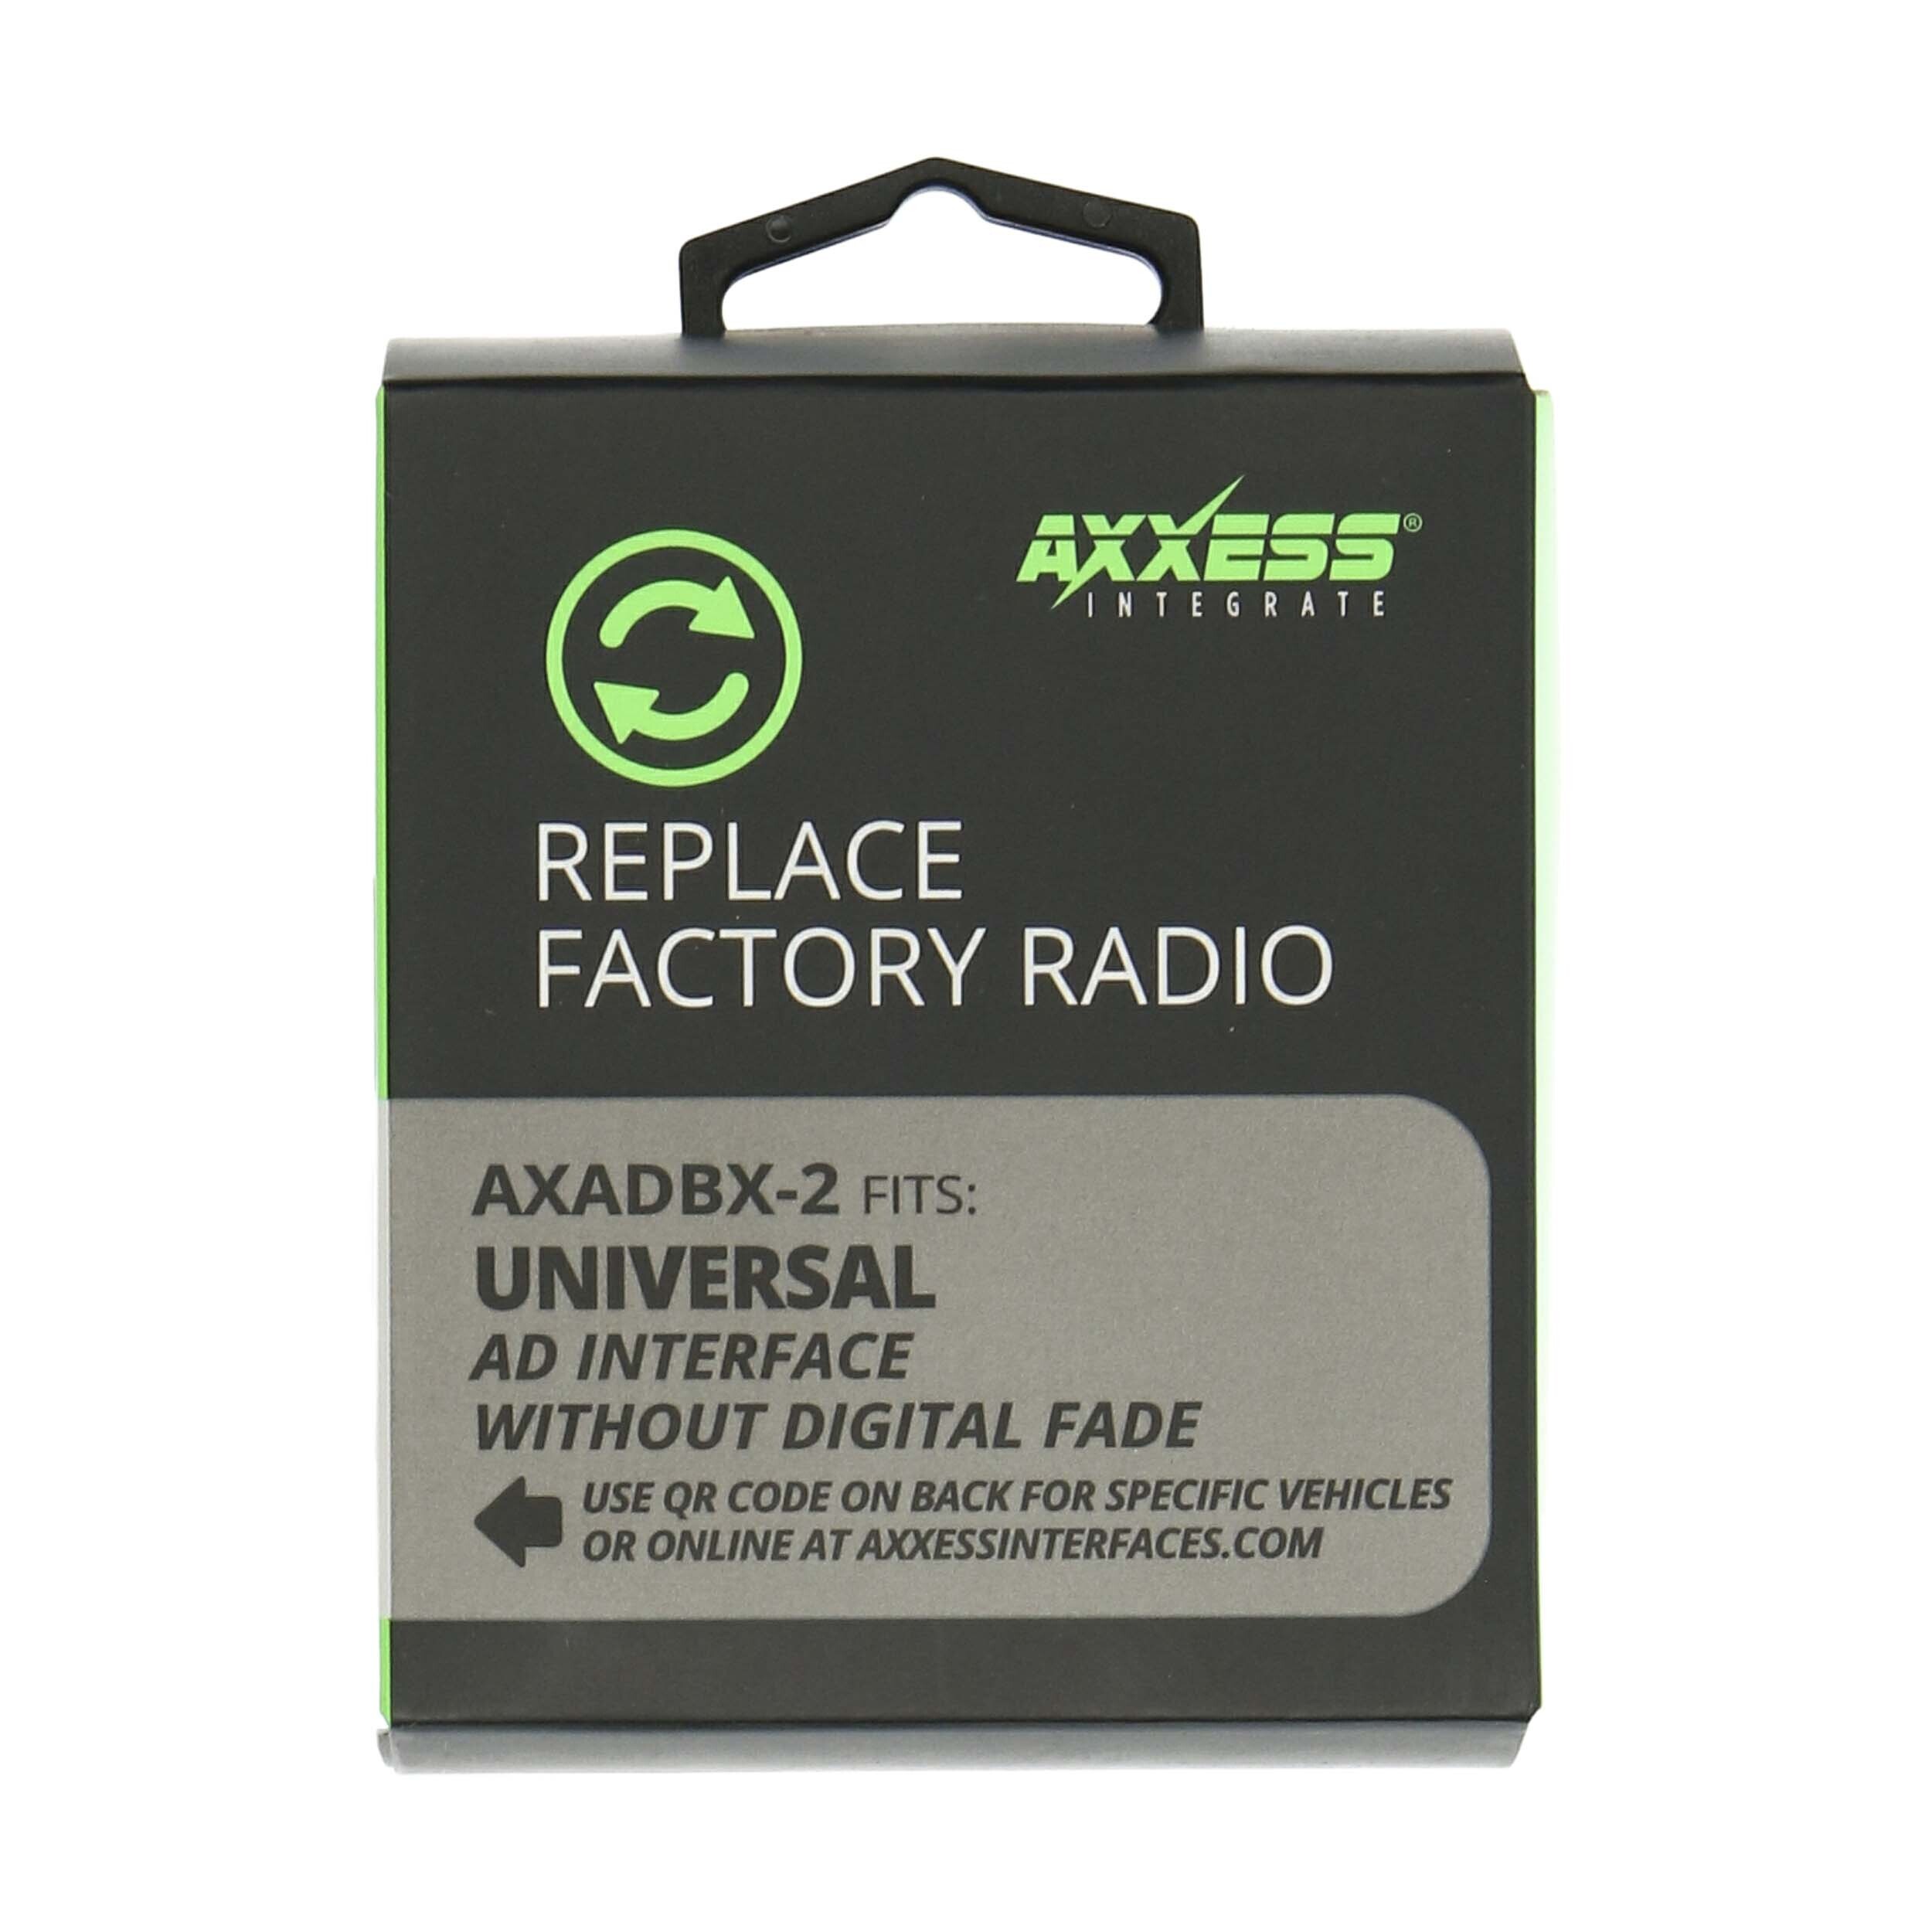 AXADBX-2 | Axxess Integrate